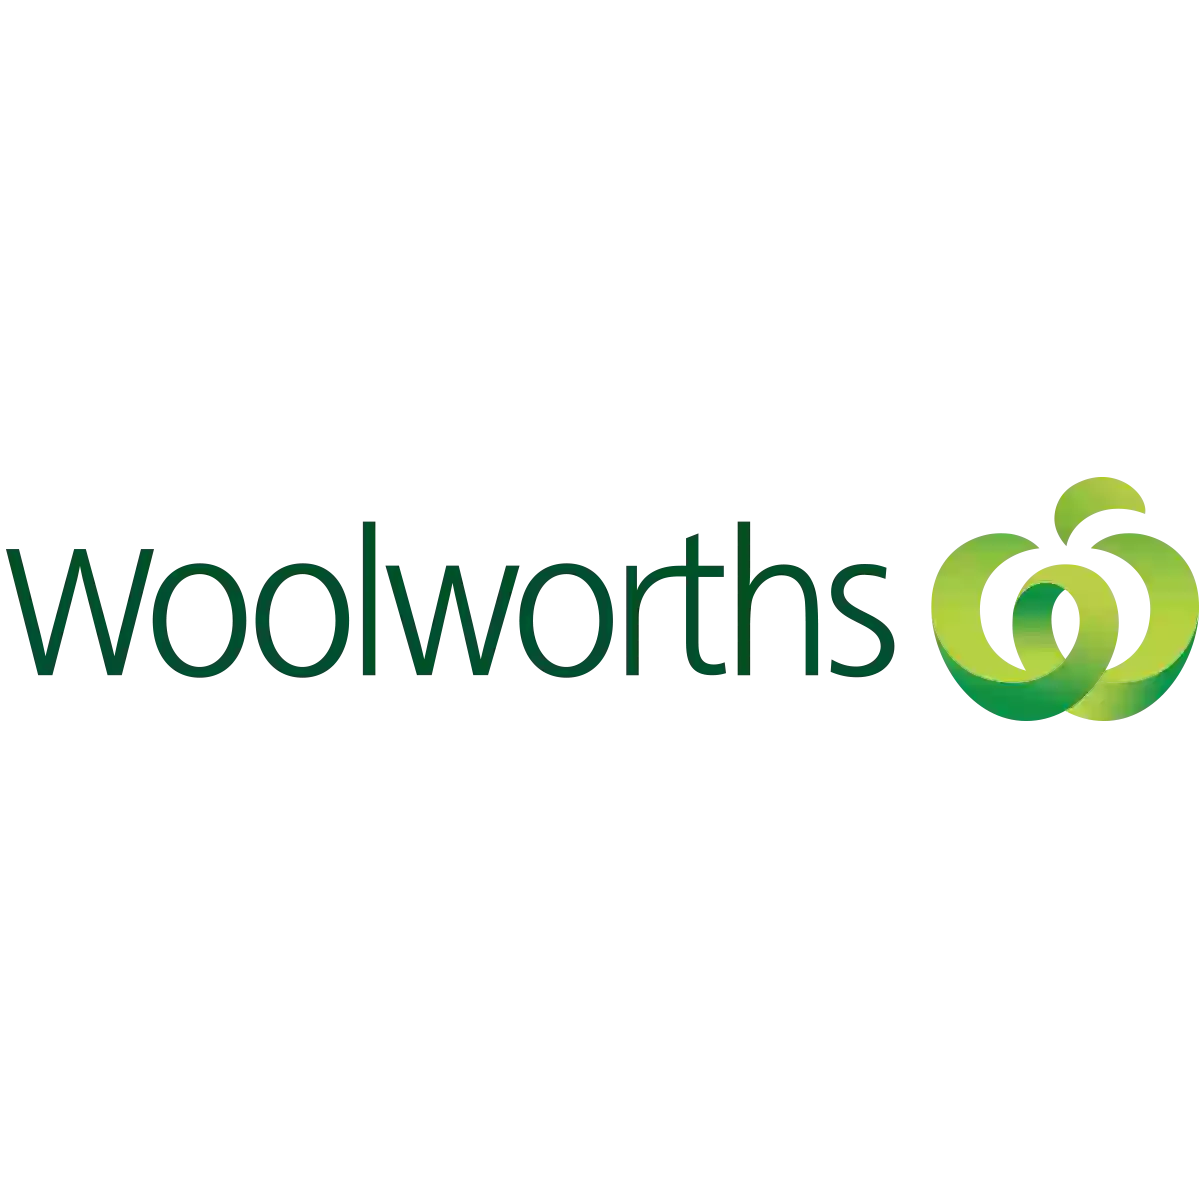 Woolworths Harrisdale